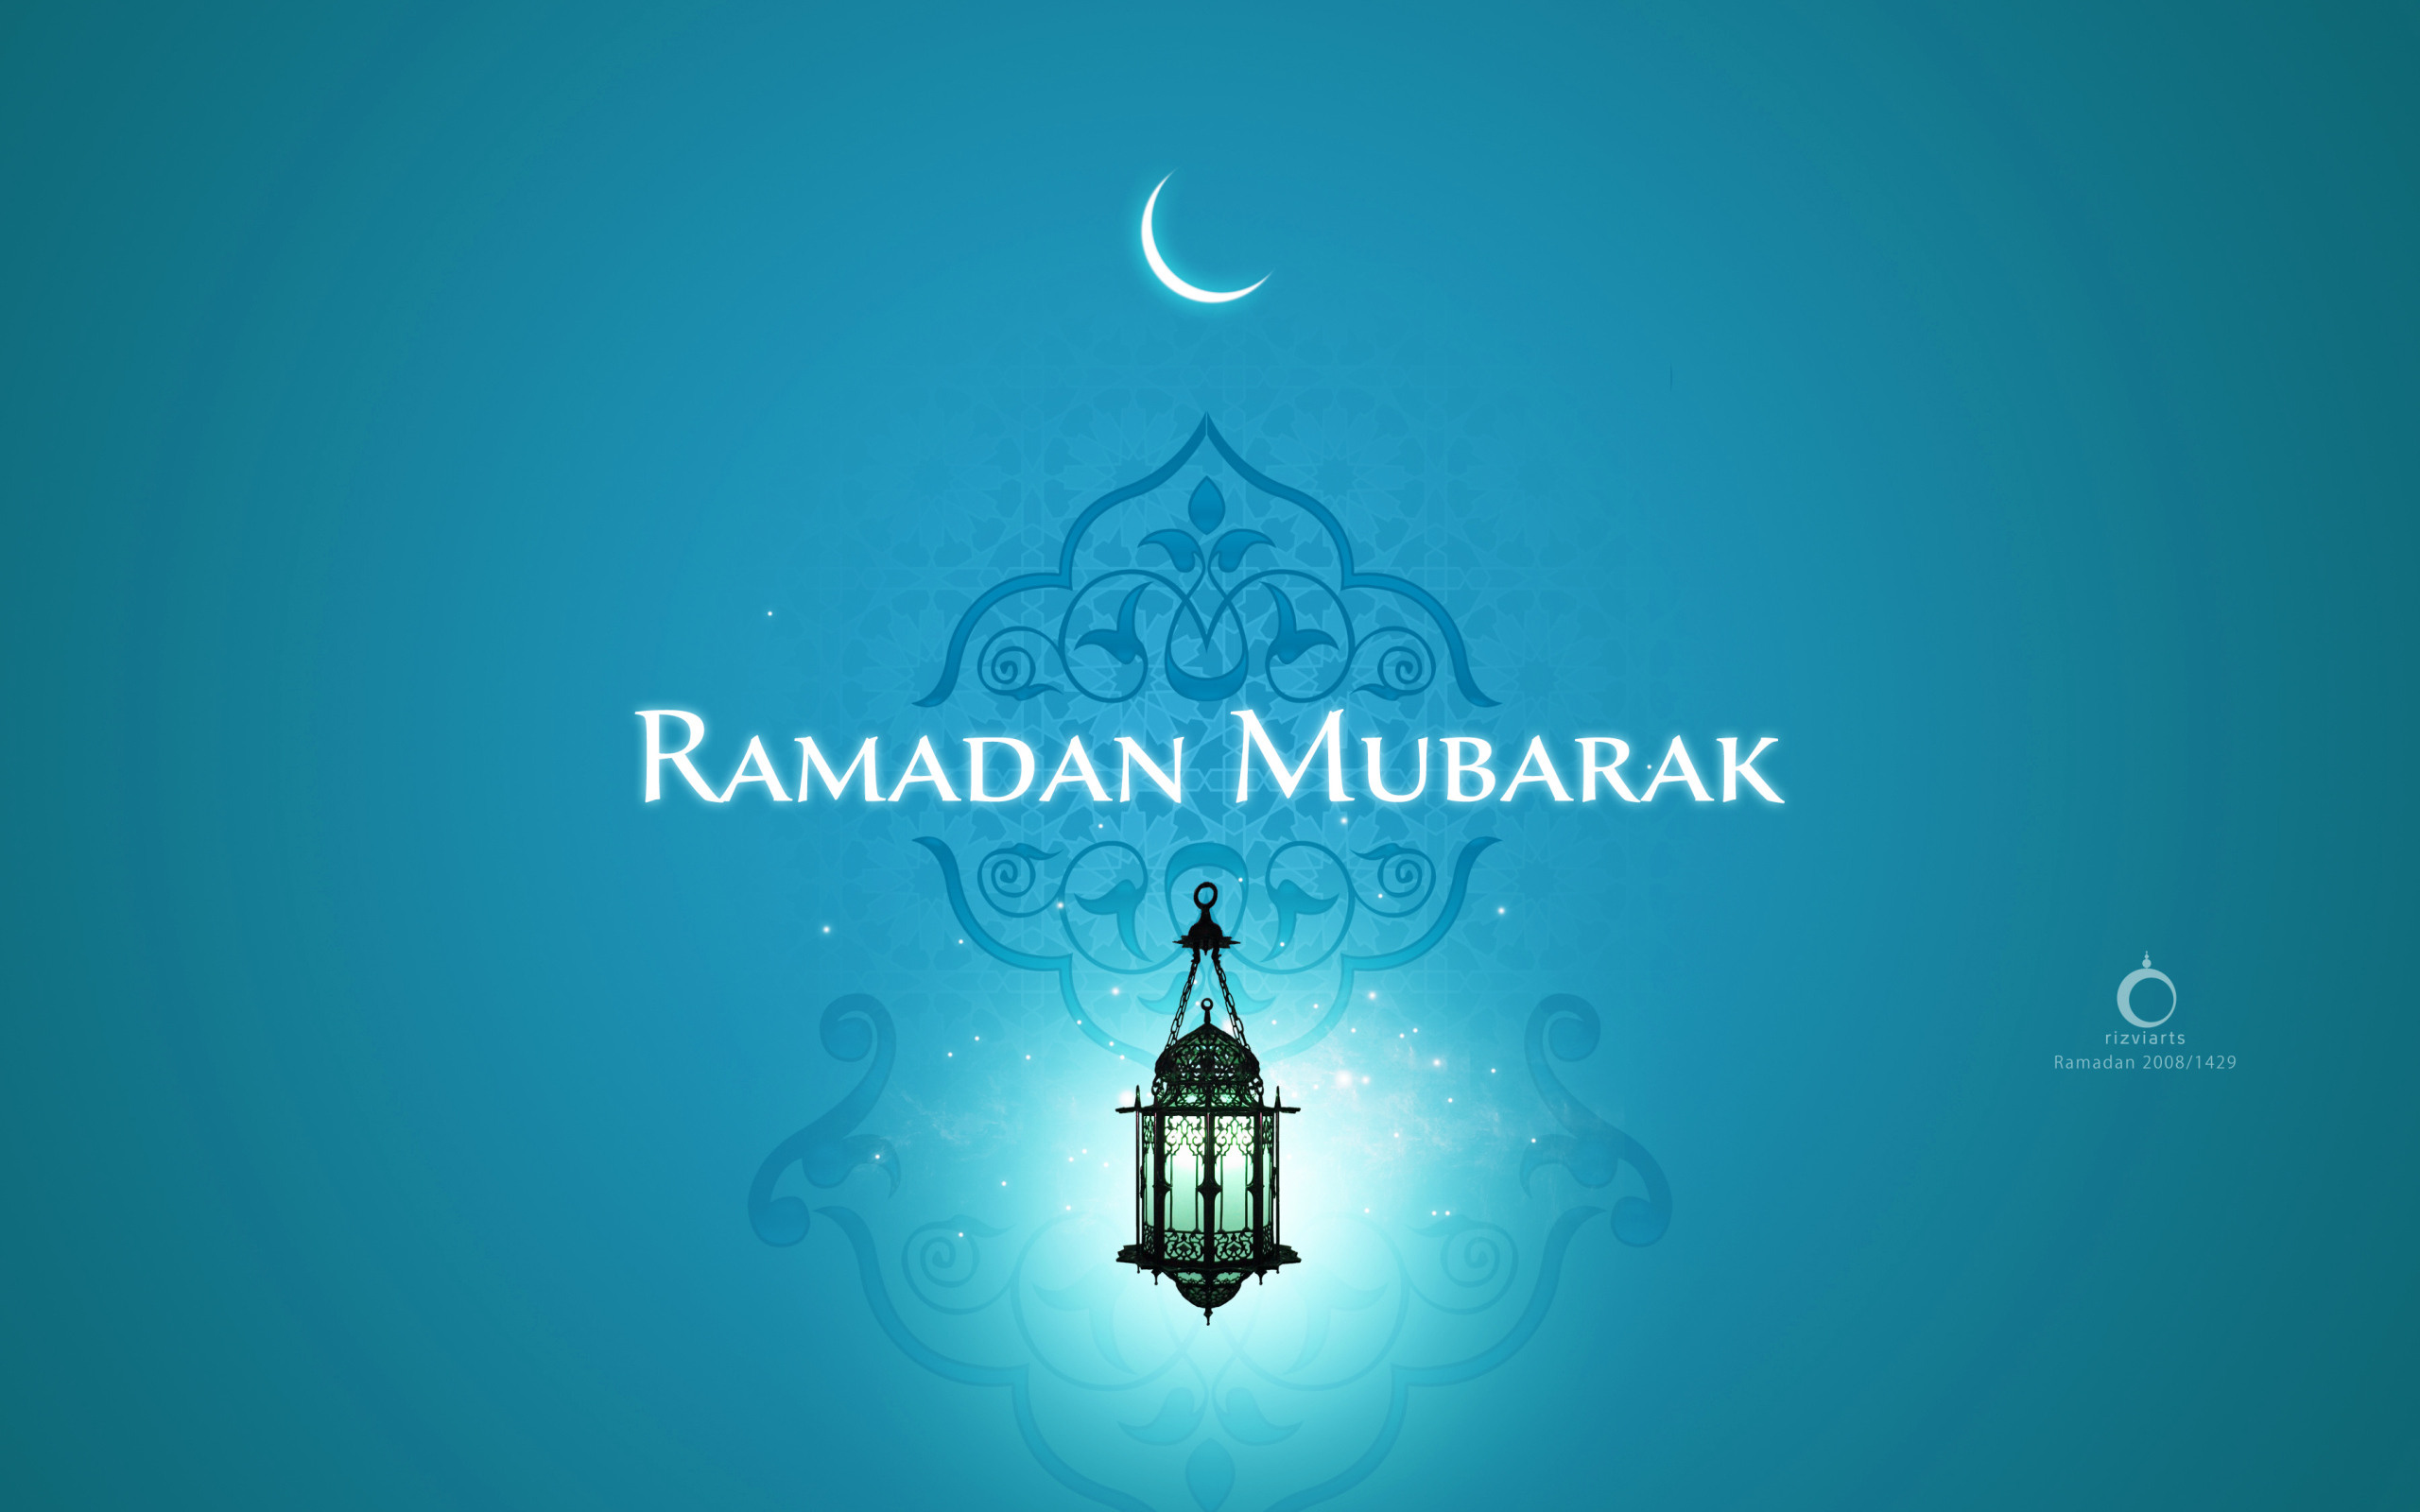 Special Ramadan